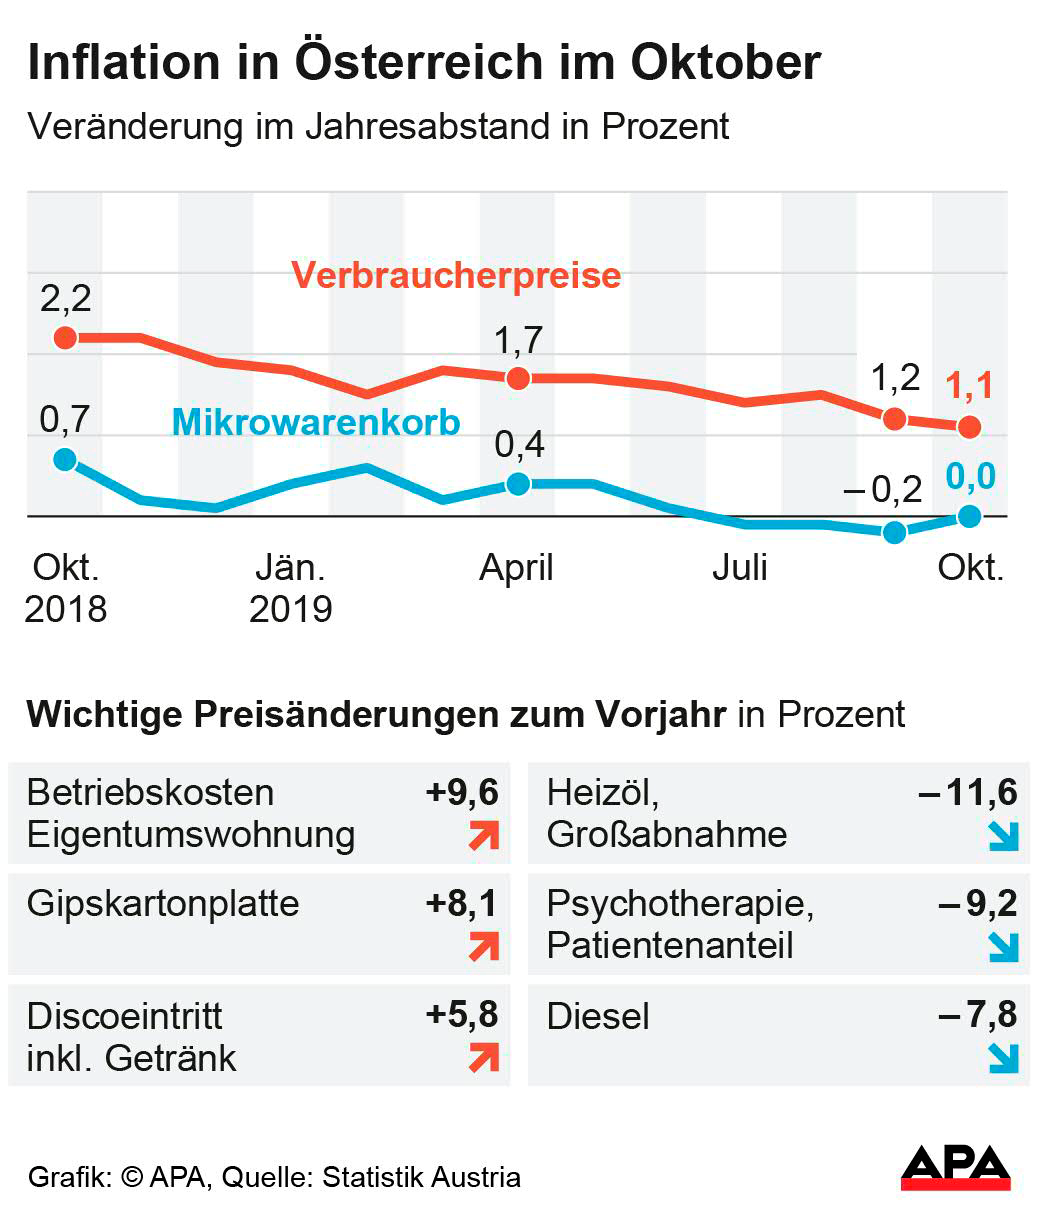 Österreichs Inflation sank im Oktober auf 1,1 Prozent